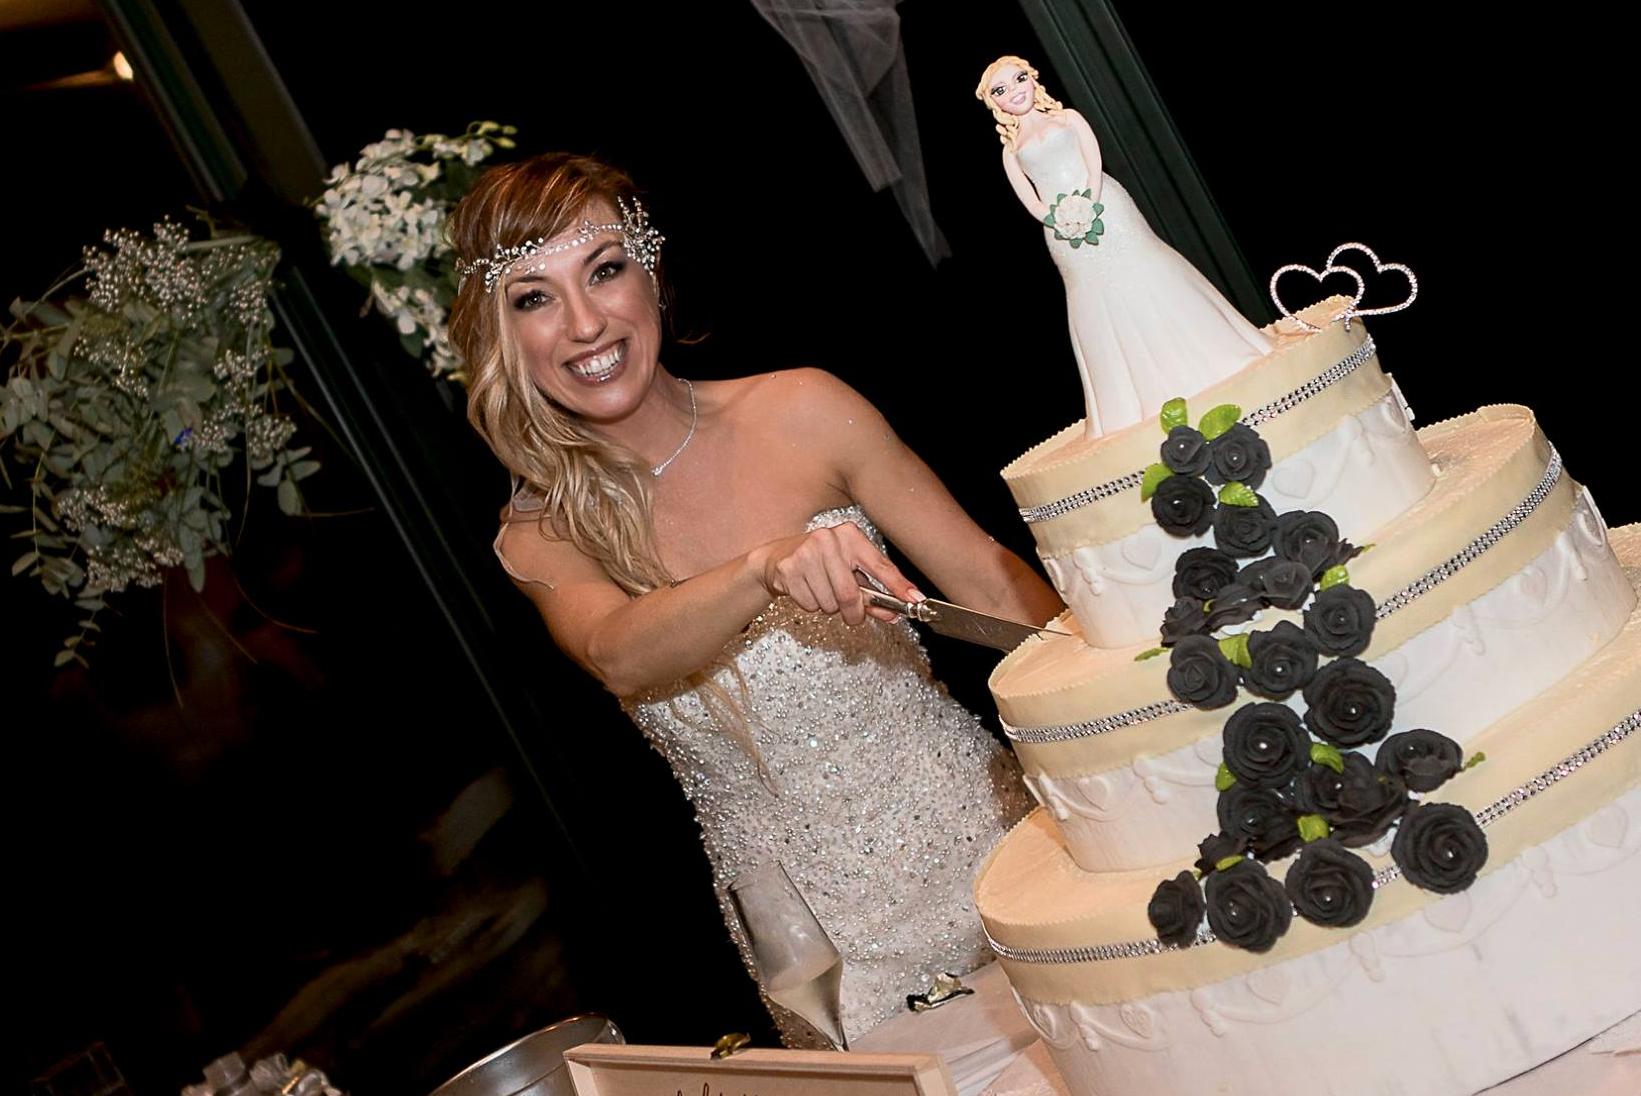 Här skär Laura upp en bit av bröllopstårtan.